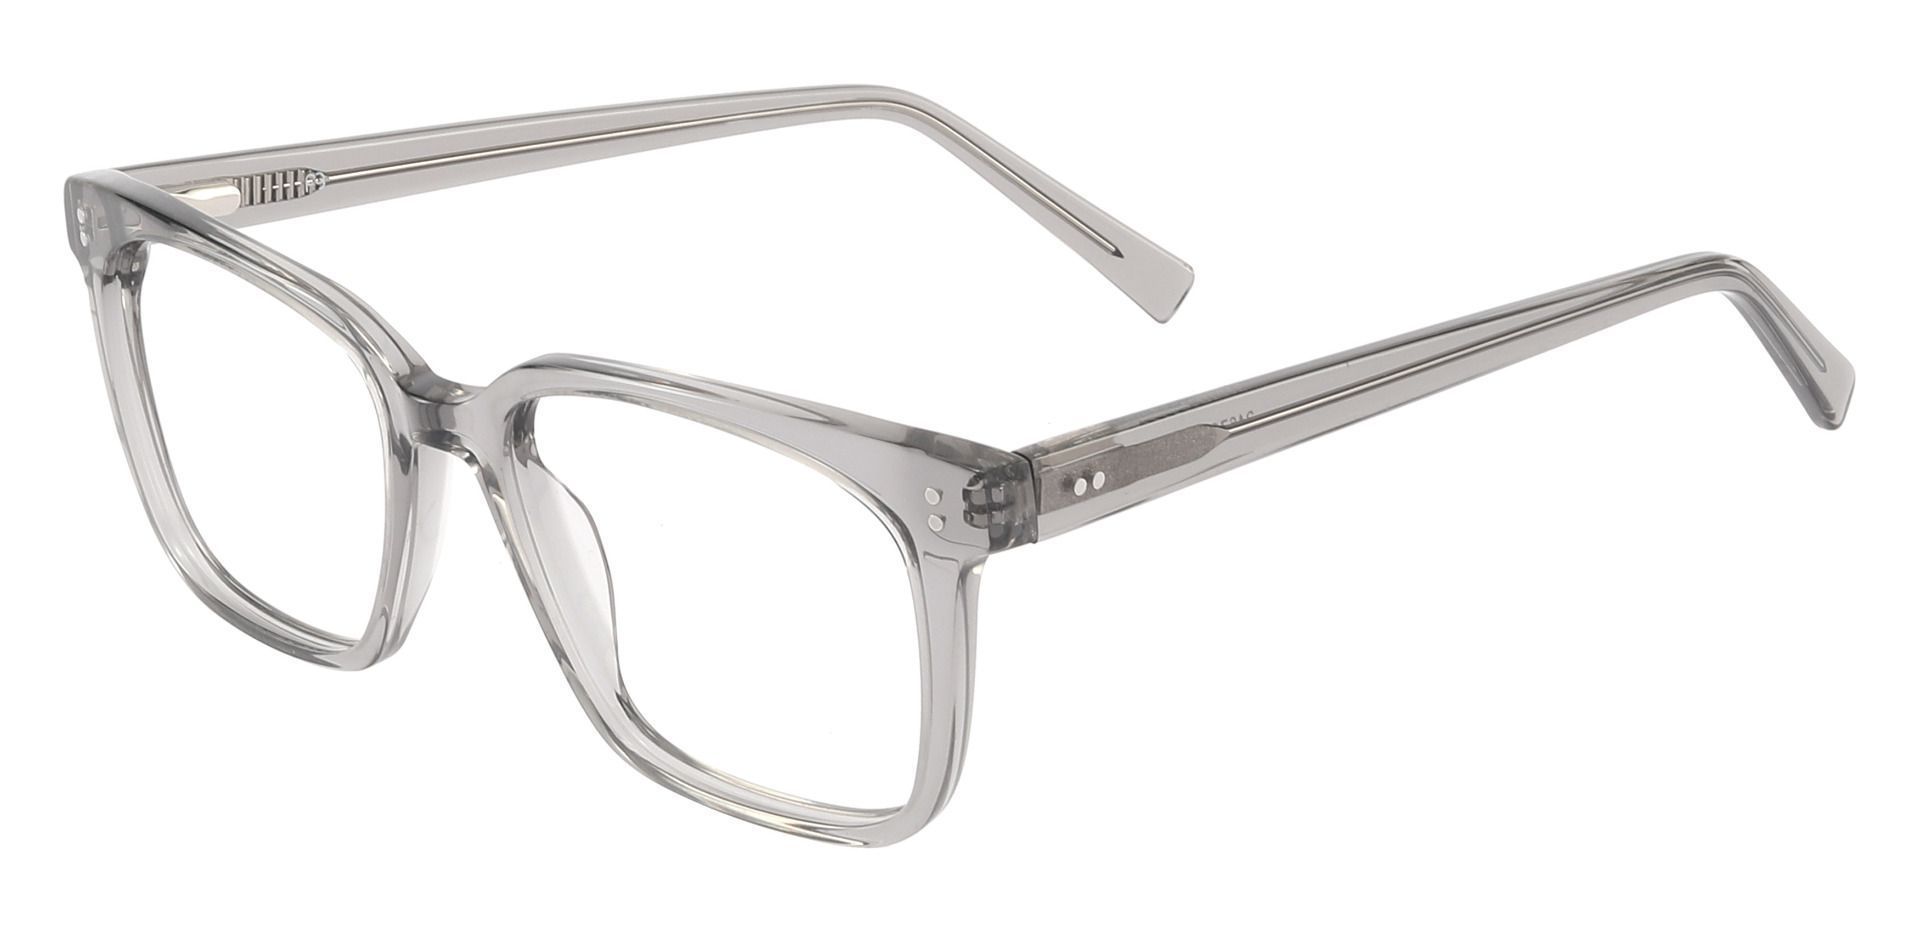 Apex Rectangle Non-Rx Glasses - Gray